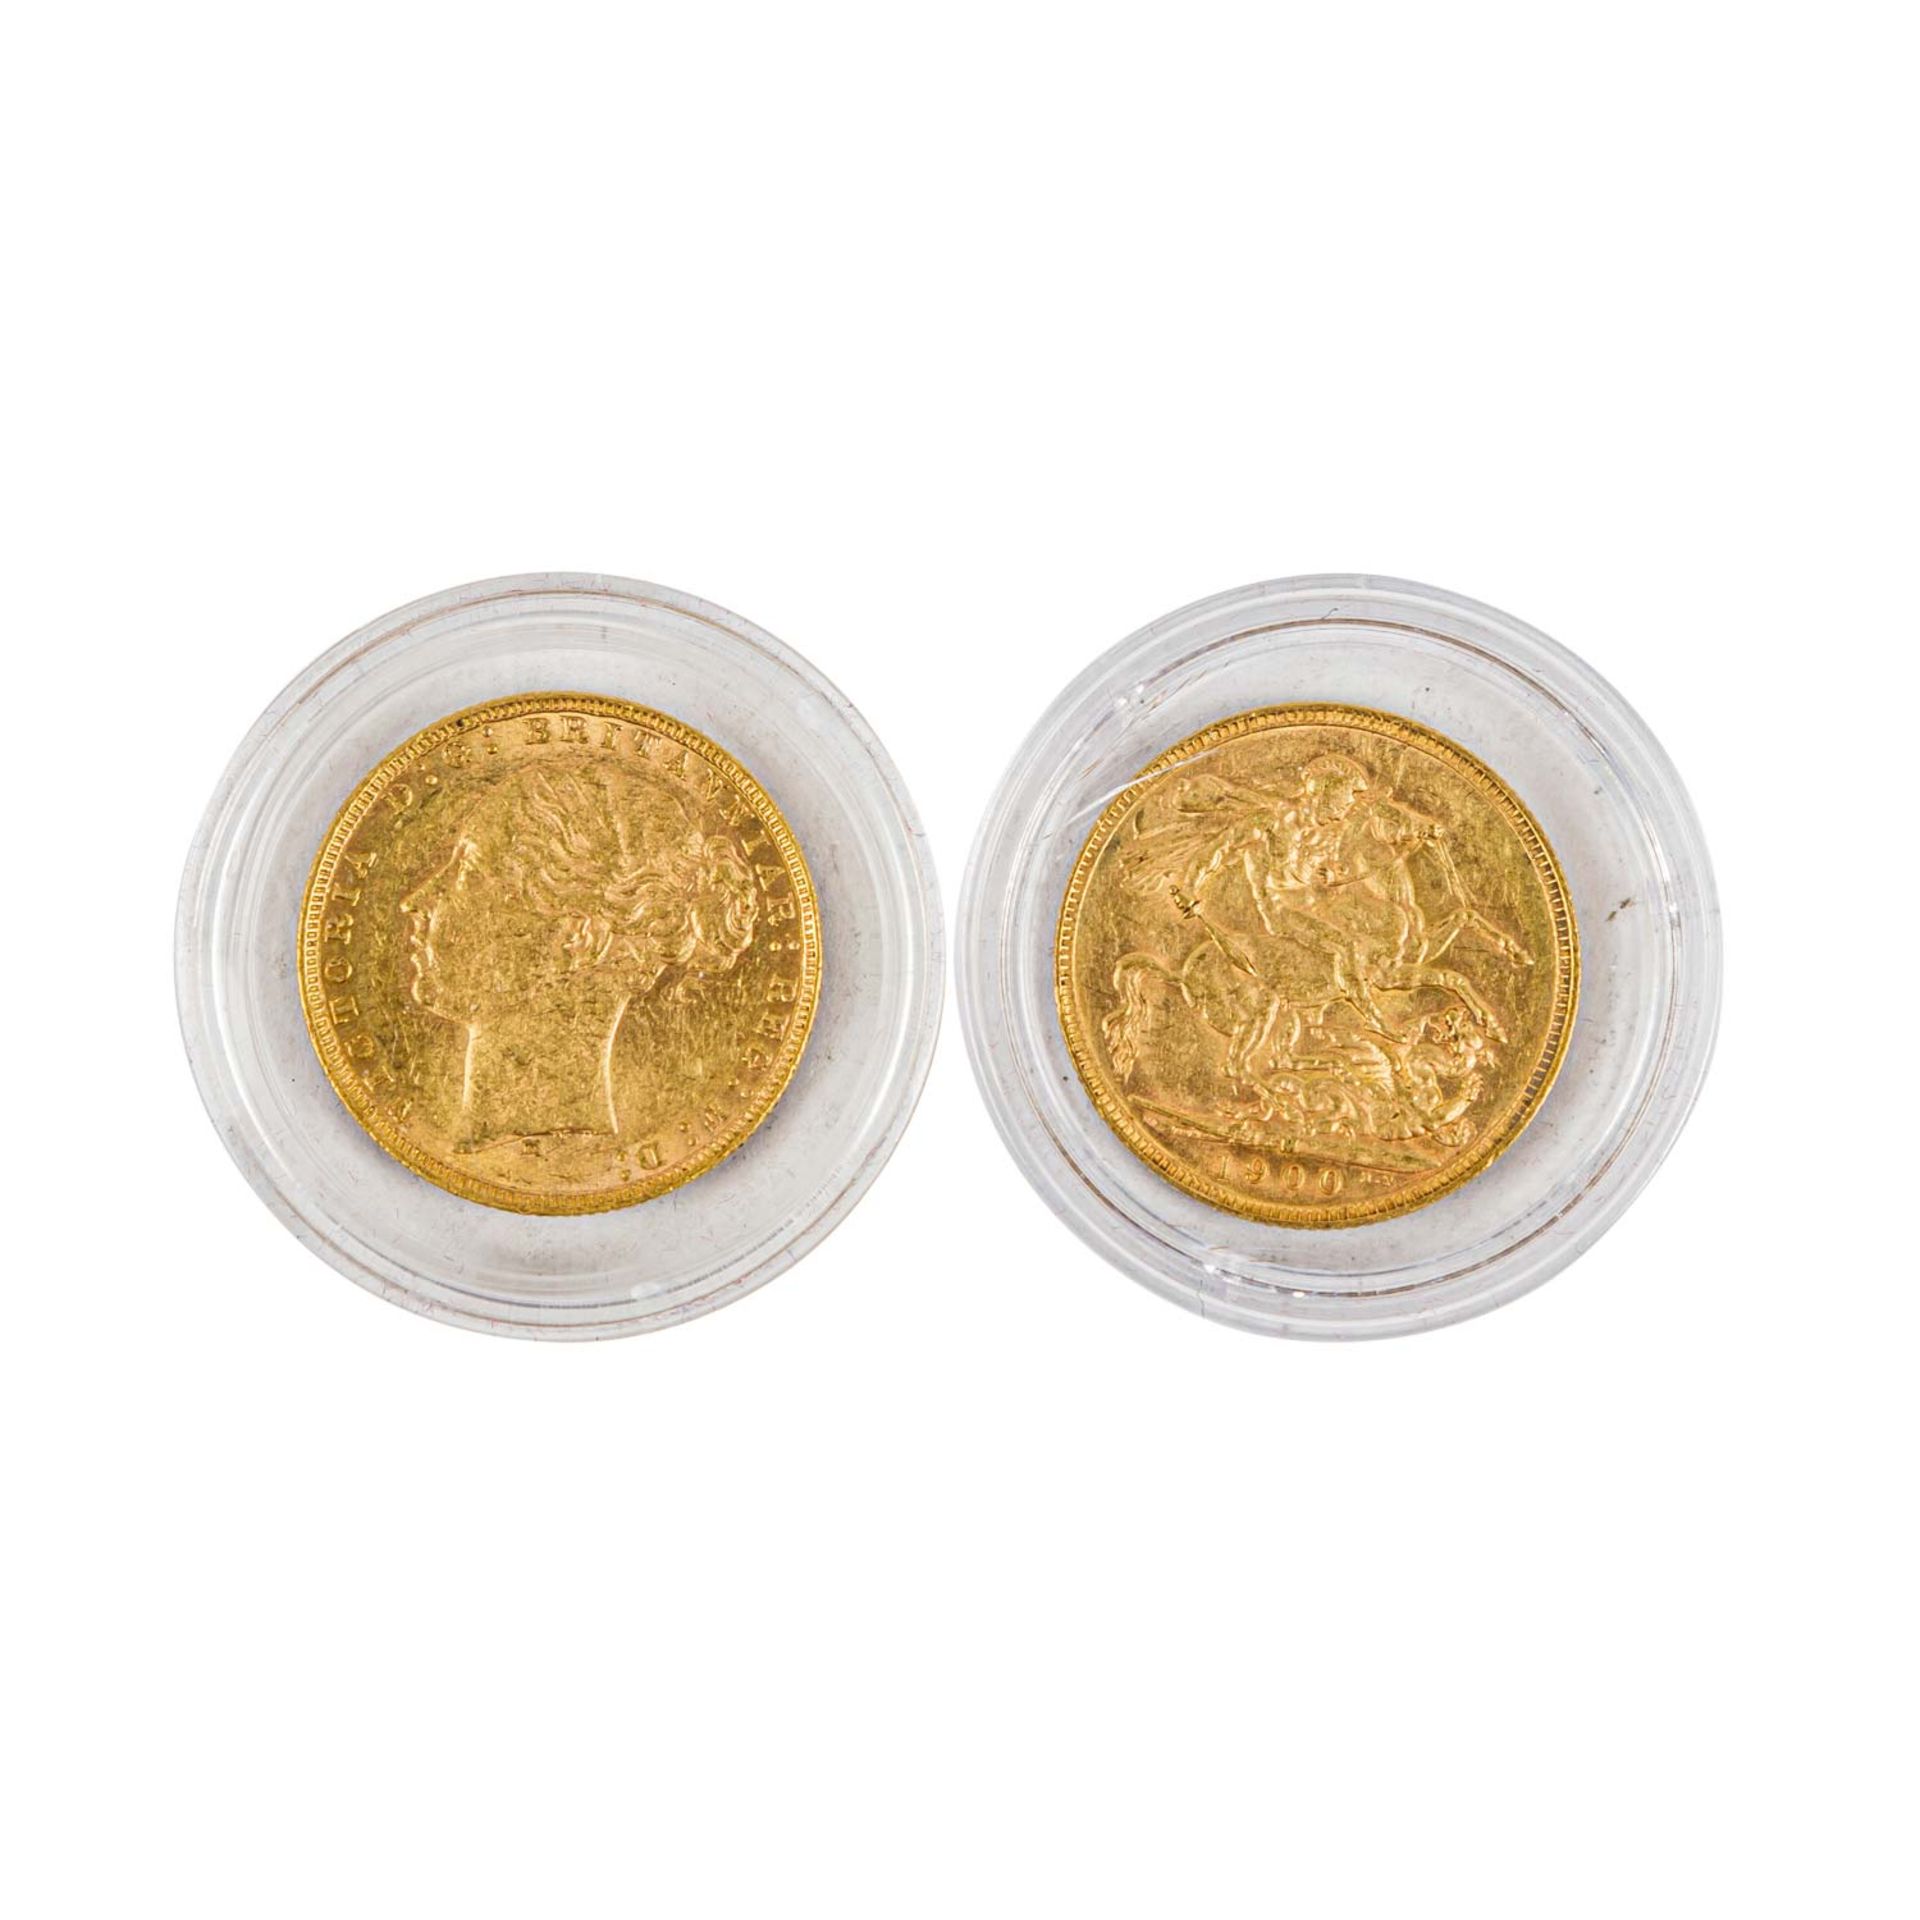 Australien / Großbritannien - 2 historische Sovereigns 1879 und 1900/M, GOLD, - Image 2 of 2